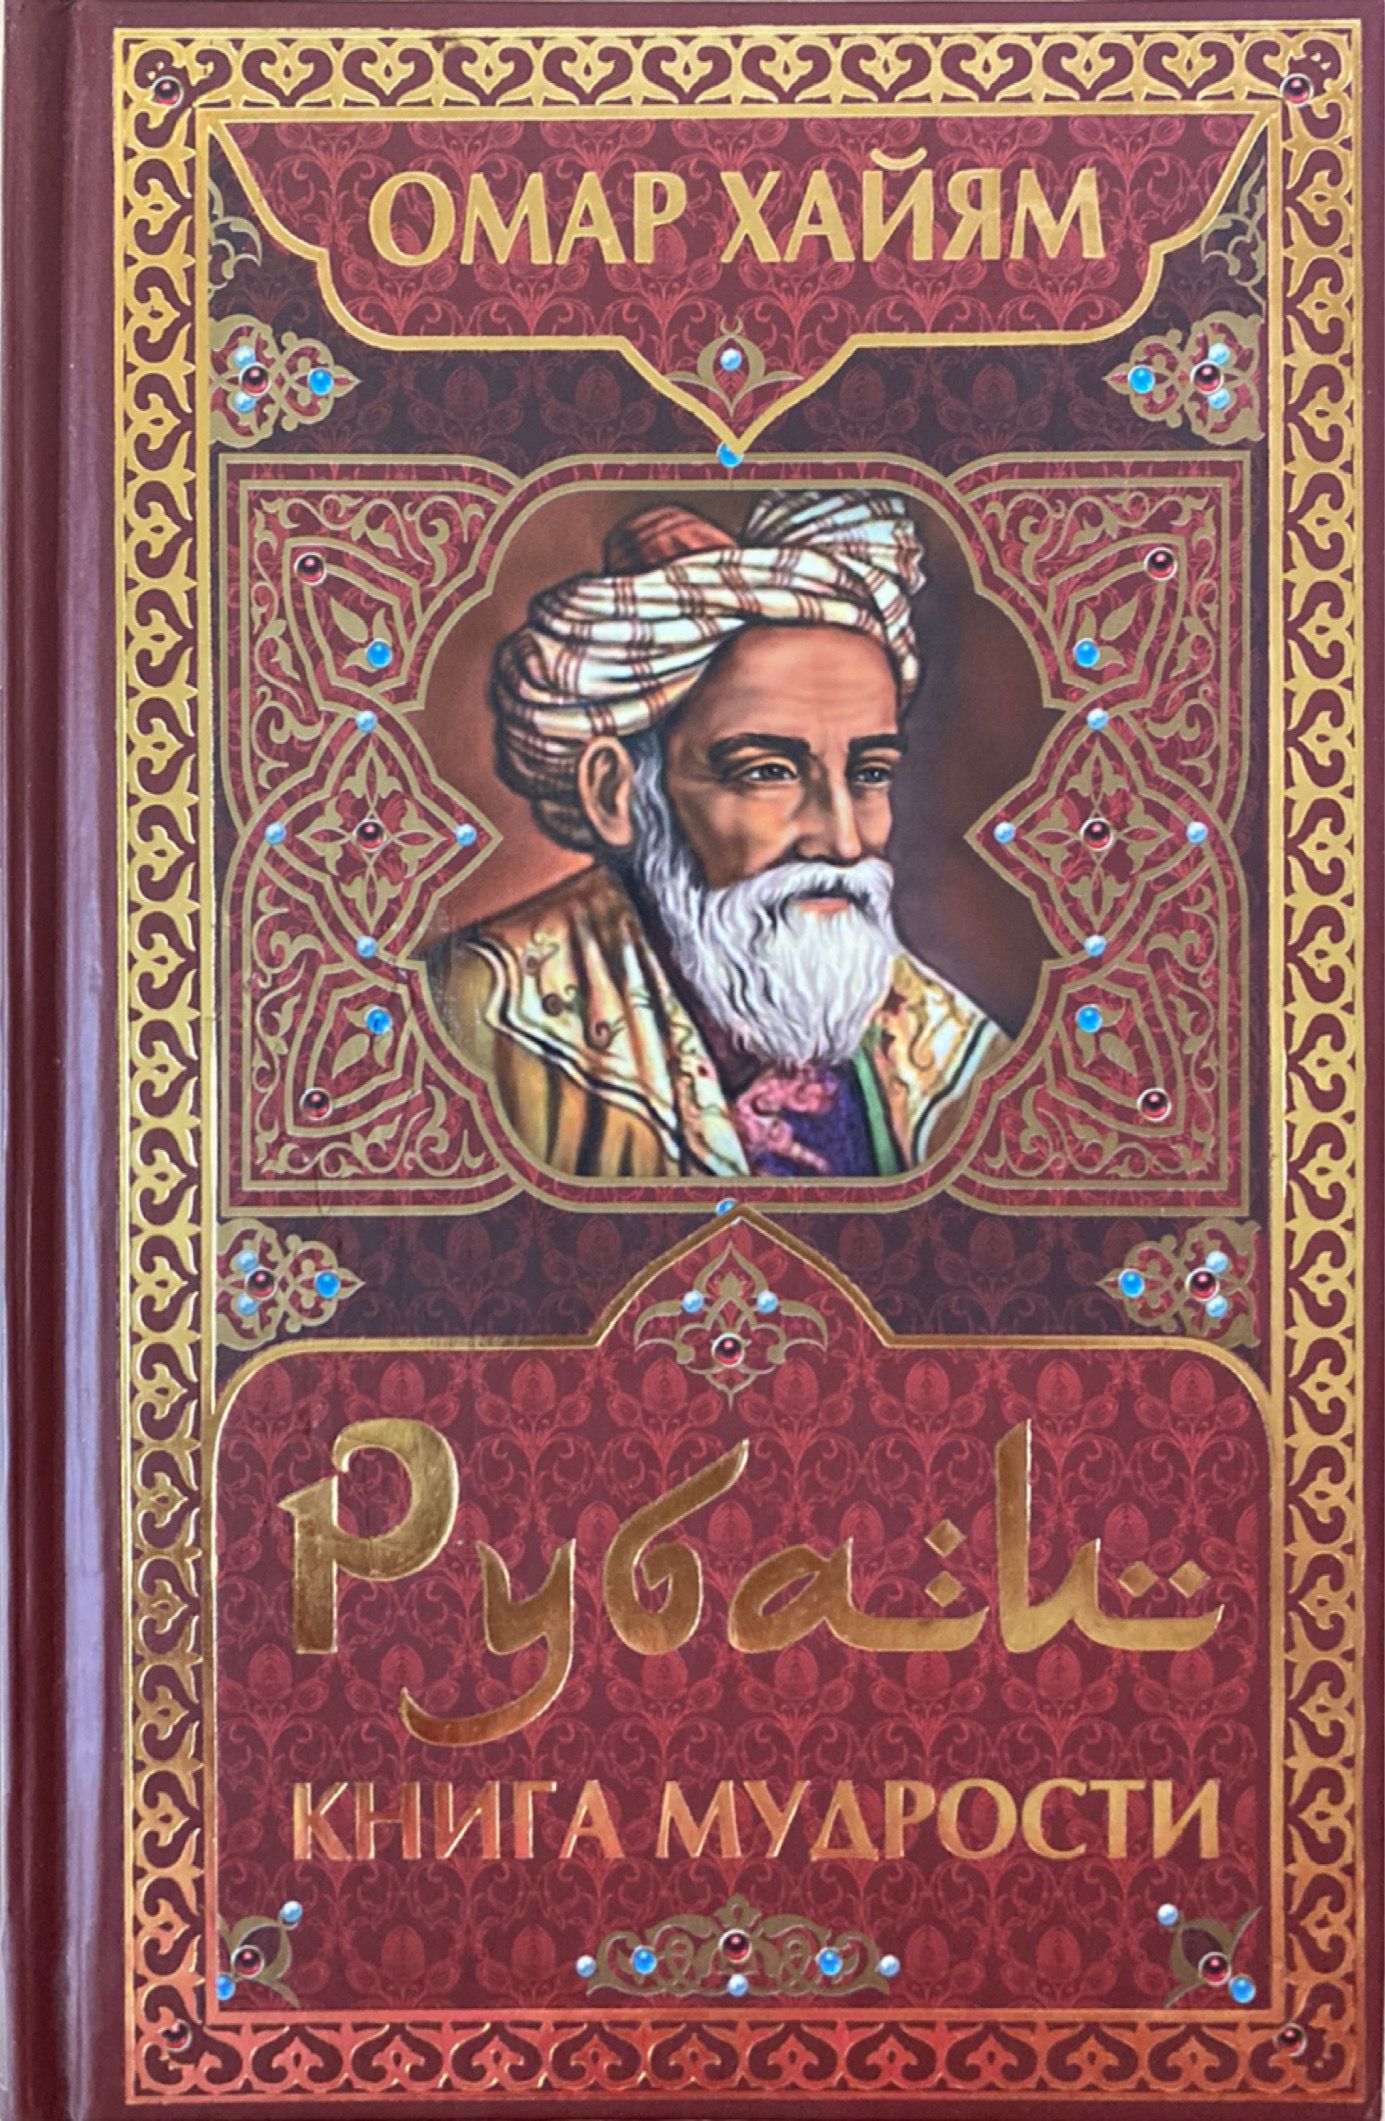 Рубаи хаяма. Омар Хайям. Рубаи. Книга Рубаи (Хайям Омар). Книга Рубаи (Хайям о.). Рубаи мудрости Омар Хайям.